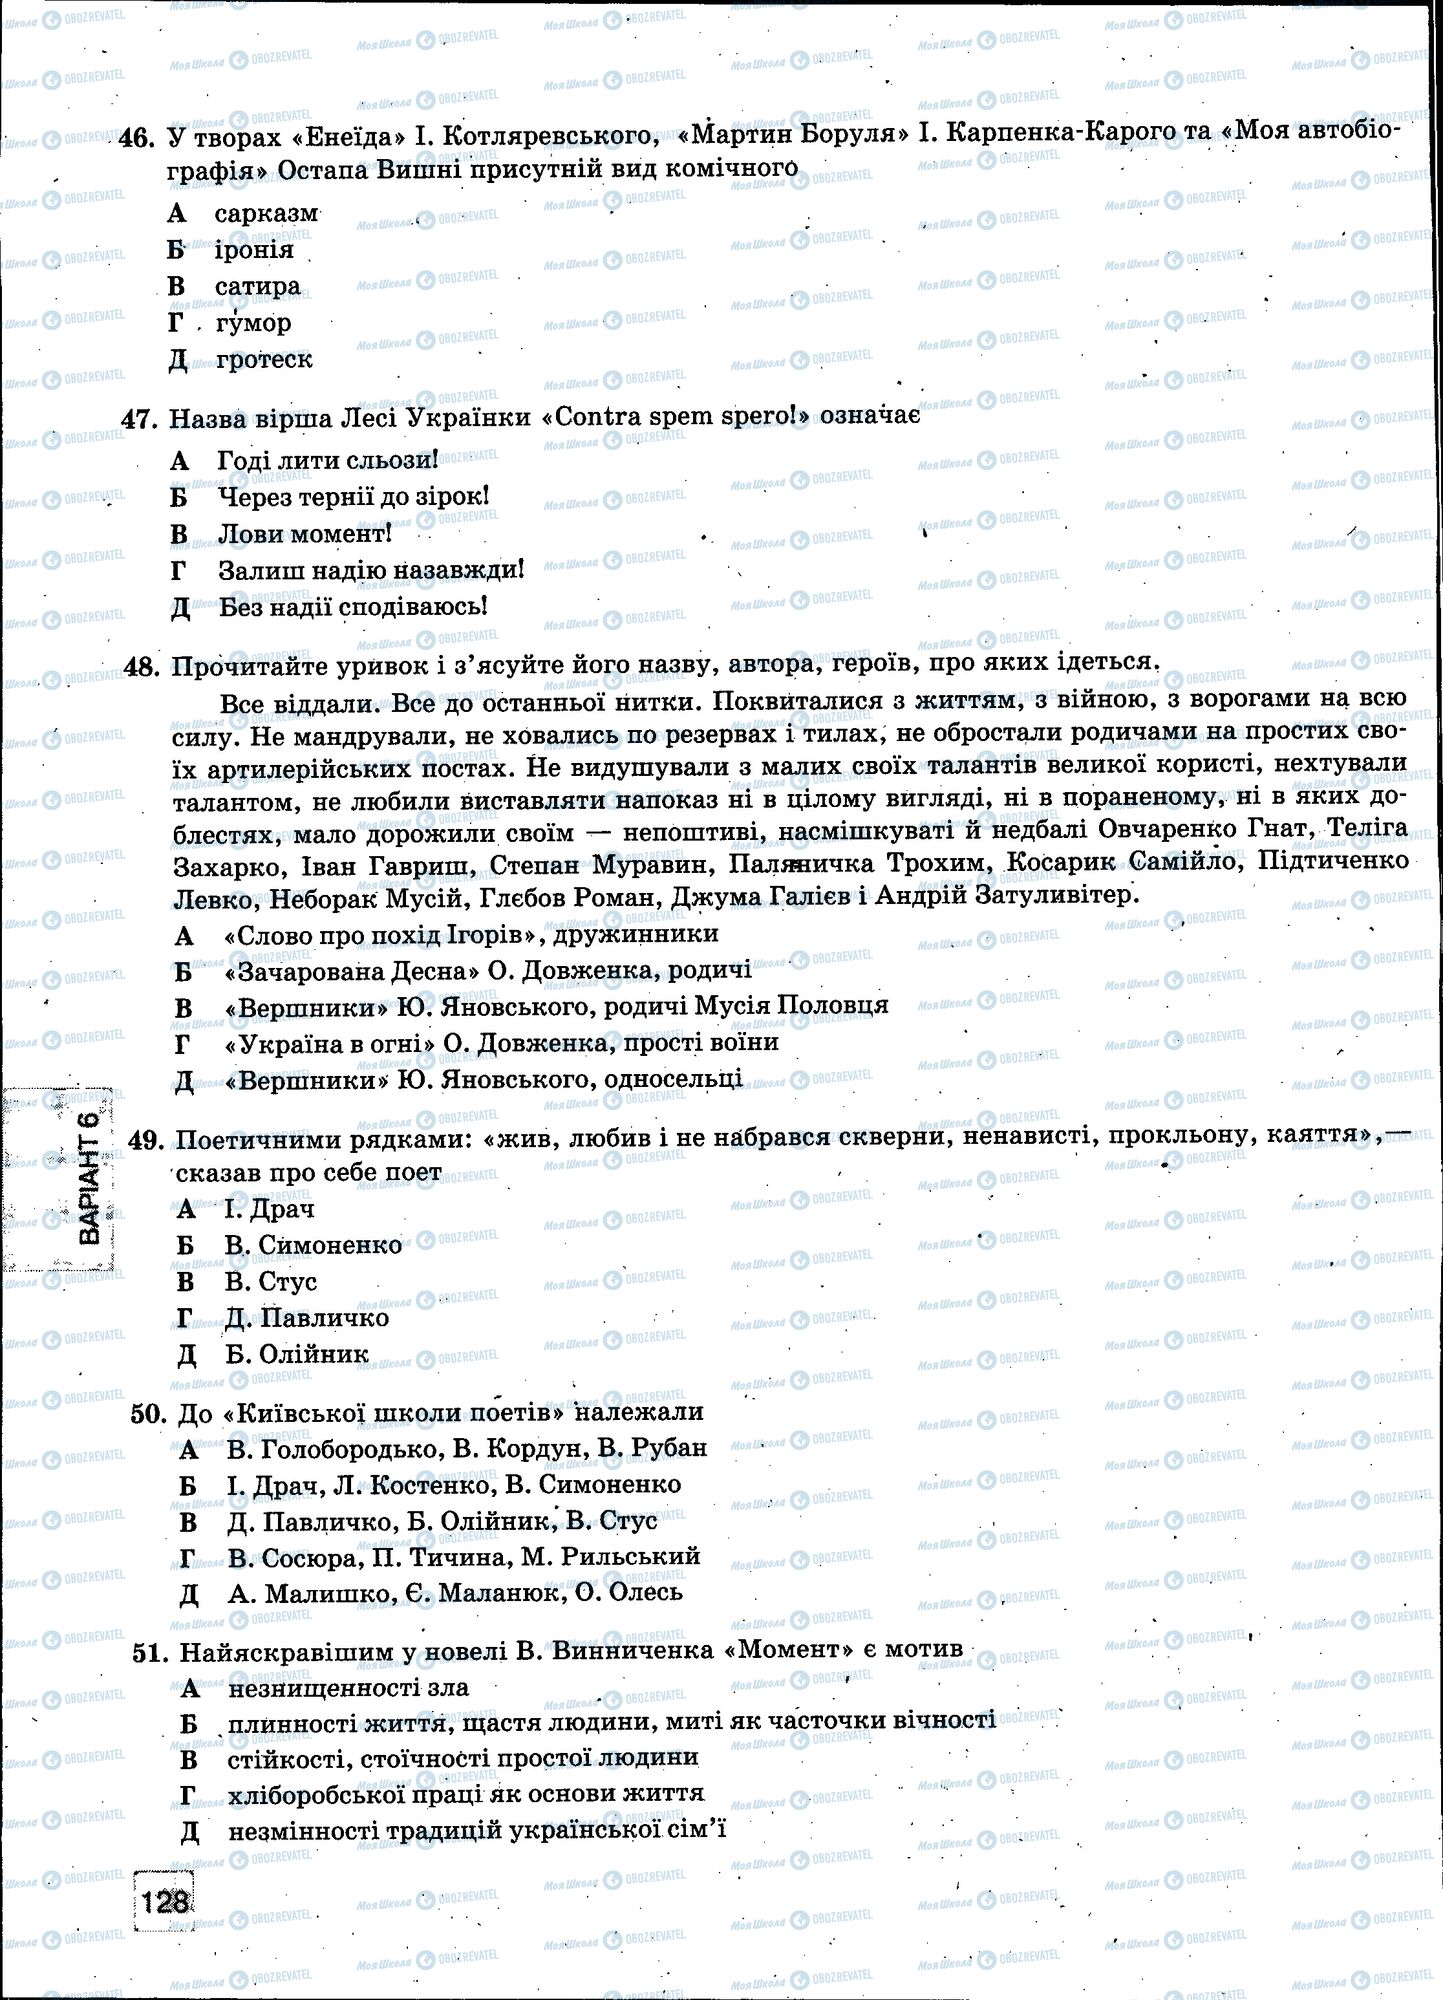 ЗНО Укр мова 11 класс страница 128